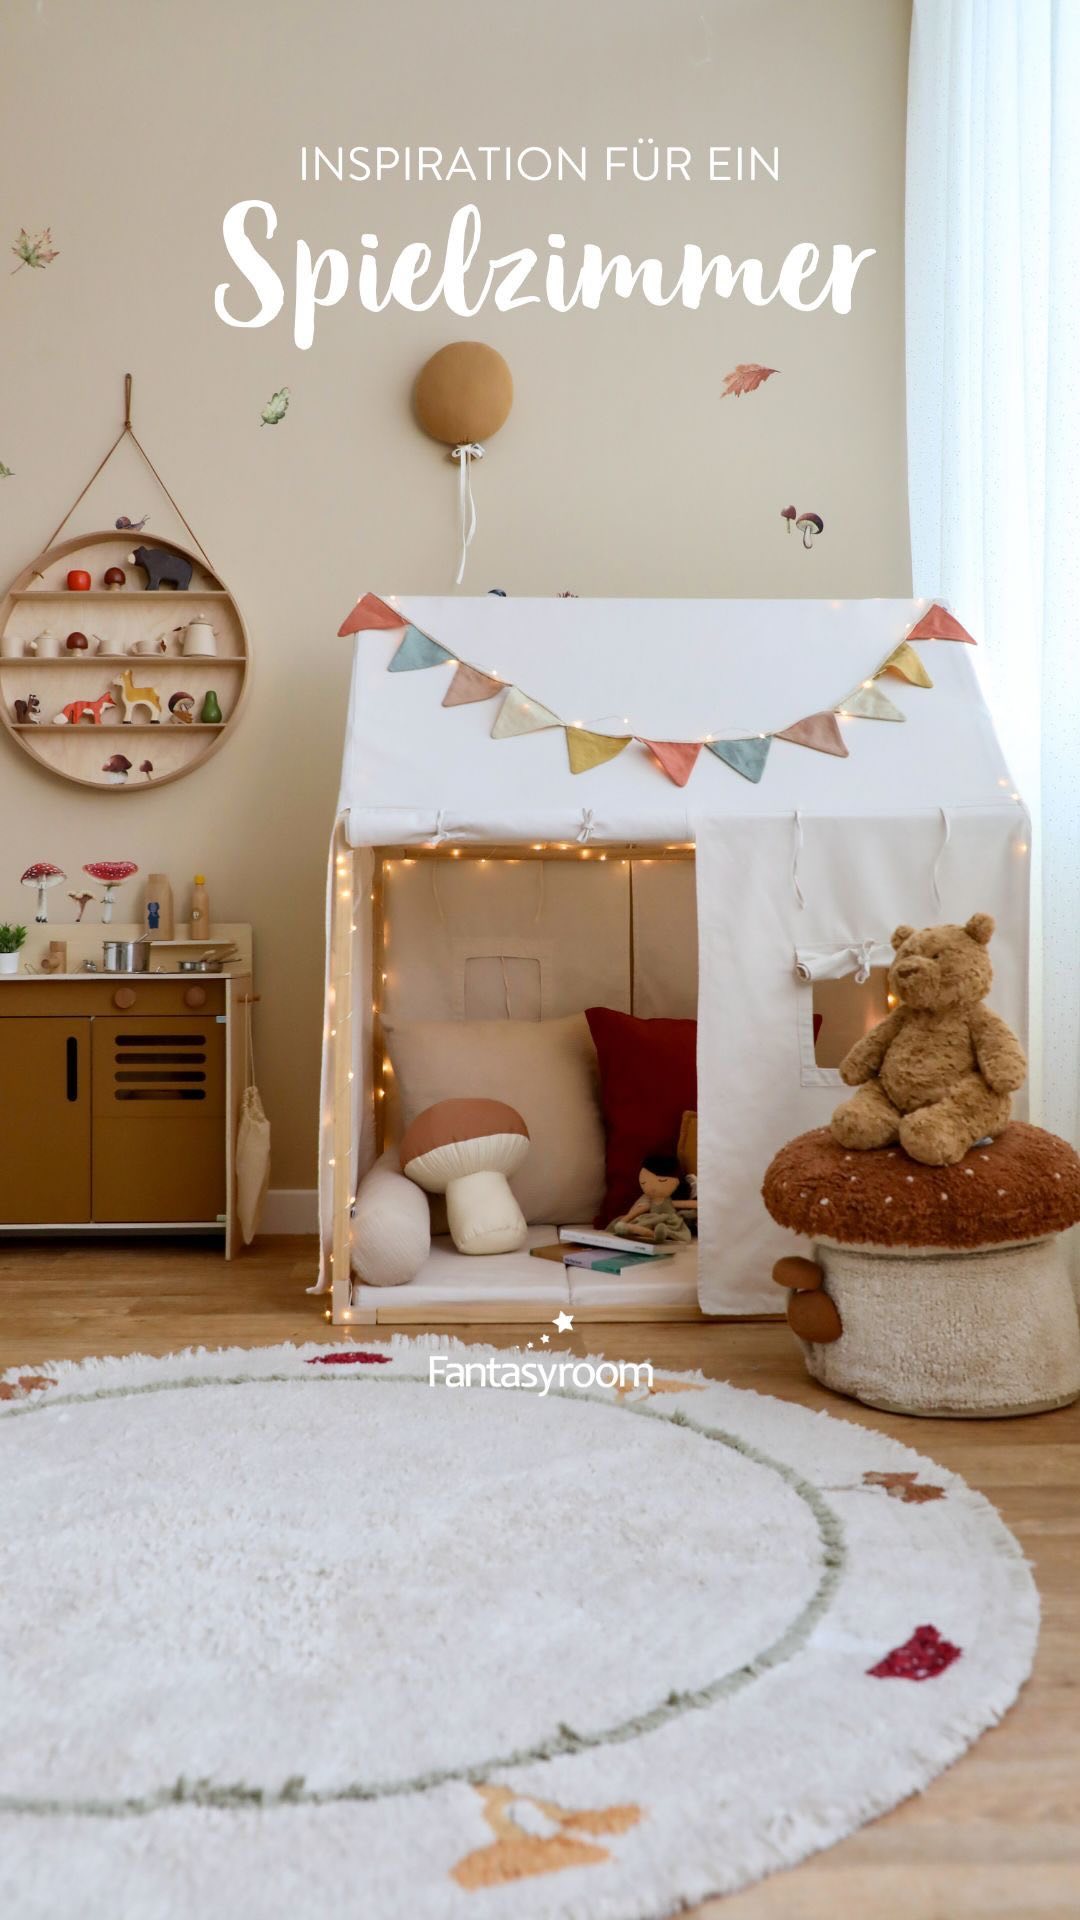 Heute haben wir eine Spielzimmer Idee für euch! 🧡 Das süße Spielhaus von Kids Concept wird mit Kissen und Matratze zur gemütlichen Kuschelecke. Dazu gibt es hübsche Walddeko wie Pilzhocker, Pilzteppich, Igel Sitzkissen und passende Wandsticker. 🍄🦔

Ganz viele neue Dekoideen für Kinderzimmer, Spielzimmer und Babyzimmer sind im Shop eingezogen! 🤩
𝘄𝘄𝘄.𝗺𝘆-𝗳𝗮𝗻𝘁𝗮𝘀𝘆𝗿𝗼𝗼𝗺.𝗱𝗲
.
.
.
#myfantasyroom #fantasyroomdeko #spielecke #spielzimmer #playroom #playroomdecor #playroominspo #spielhaus #kidsconcept #lorenacanals #lorenacanalsrugs #kinderteppich #holzspielzeug #kuschelecke #kinderzimmer #kinderzimmerideen #kidsroomdecor #kidsinterior #childrendecor #kinder